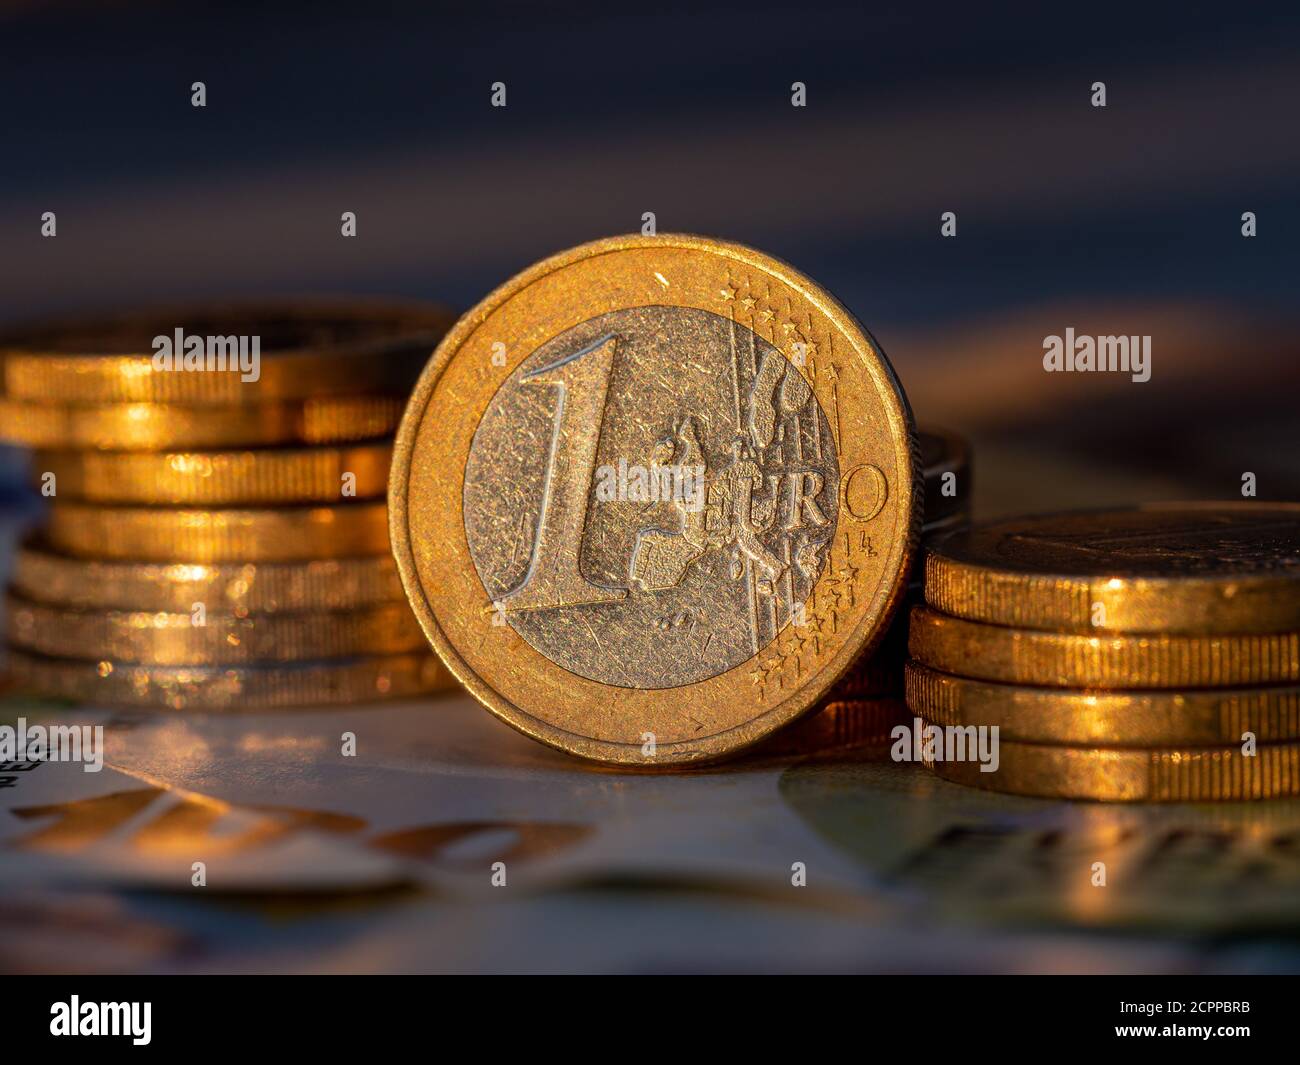 Vue rapprochée d'une pièce d'un euro avec piles de pièces d'un centiret d'euro. Banque D'Images